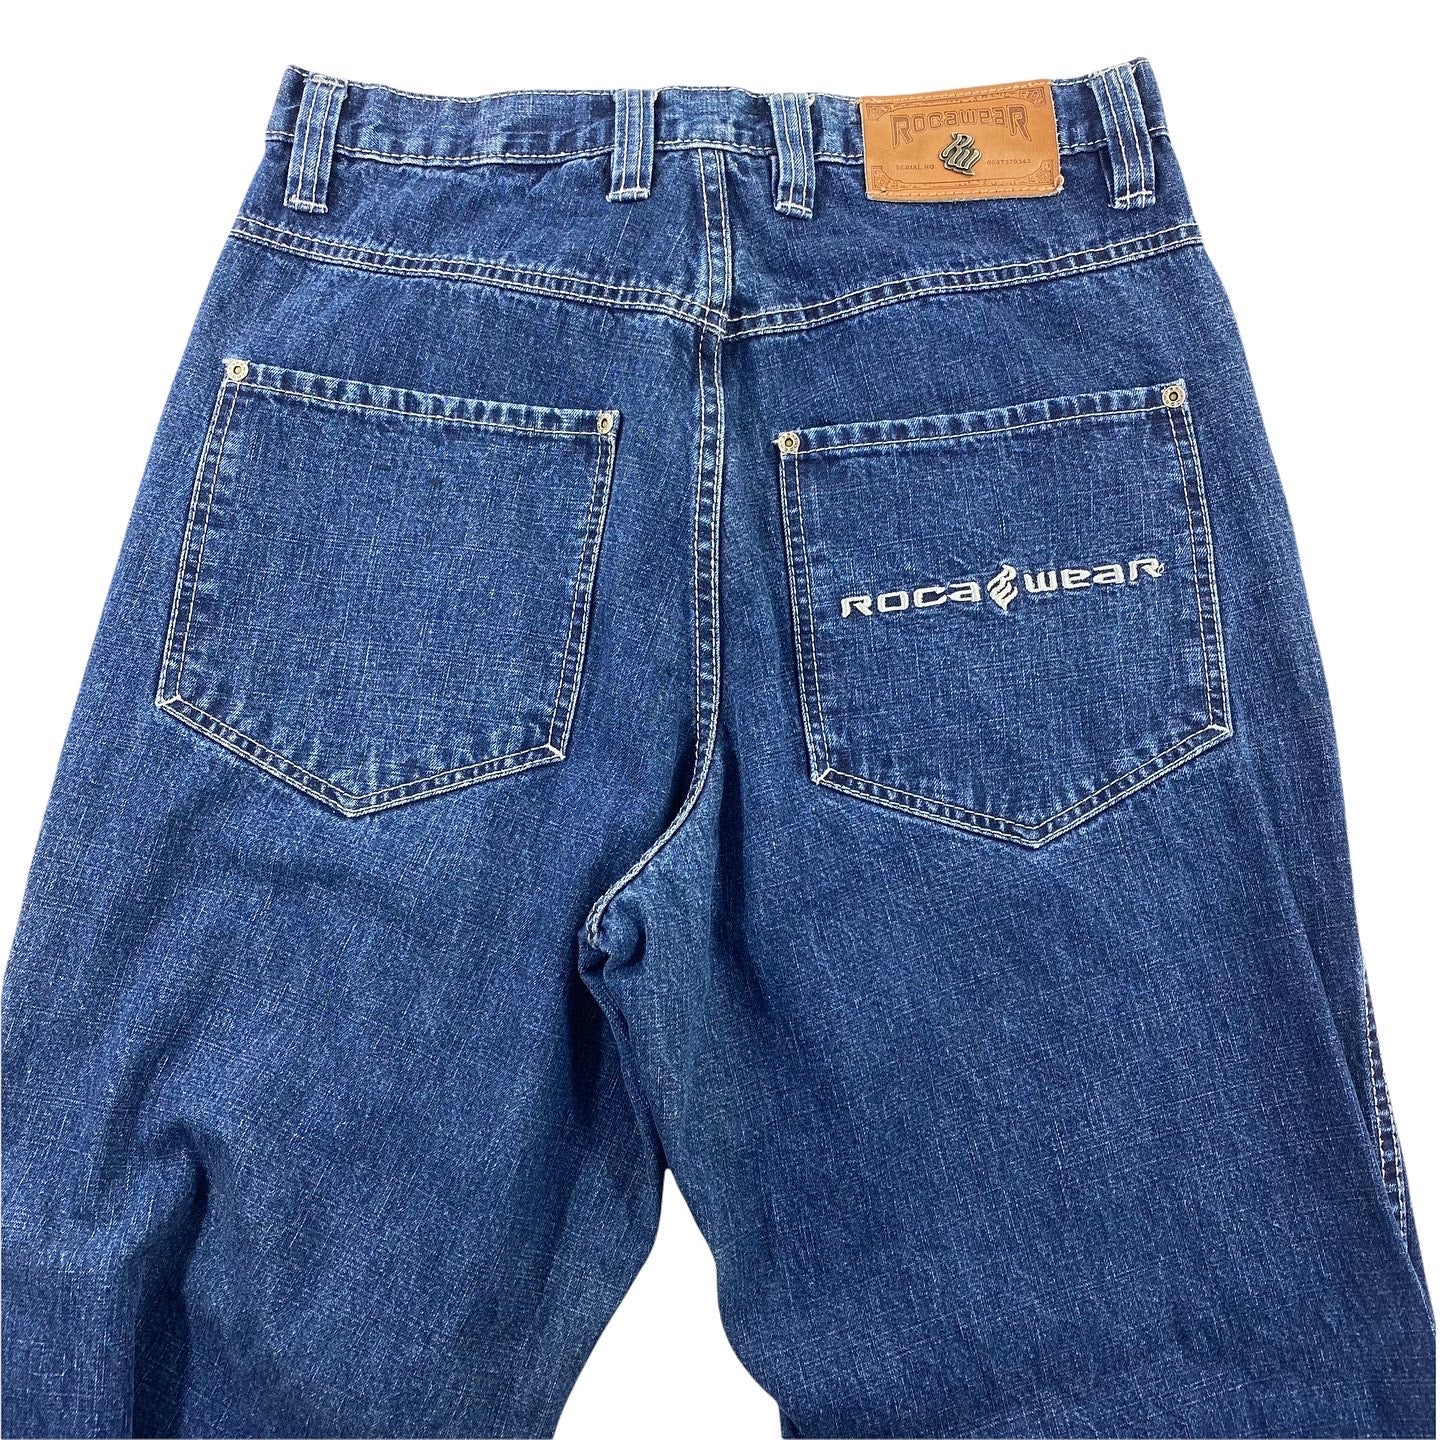 Rocawear jeans. – Vintage Sponsor